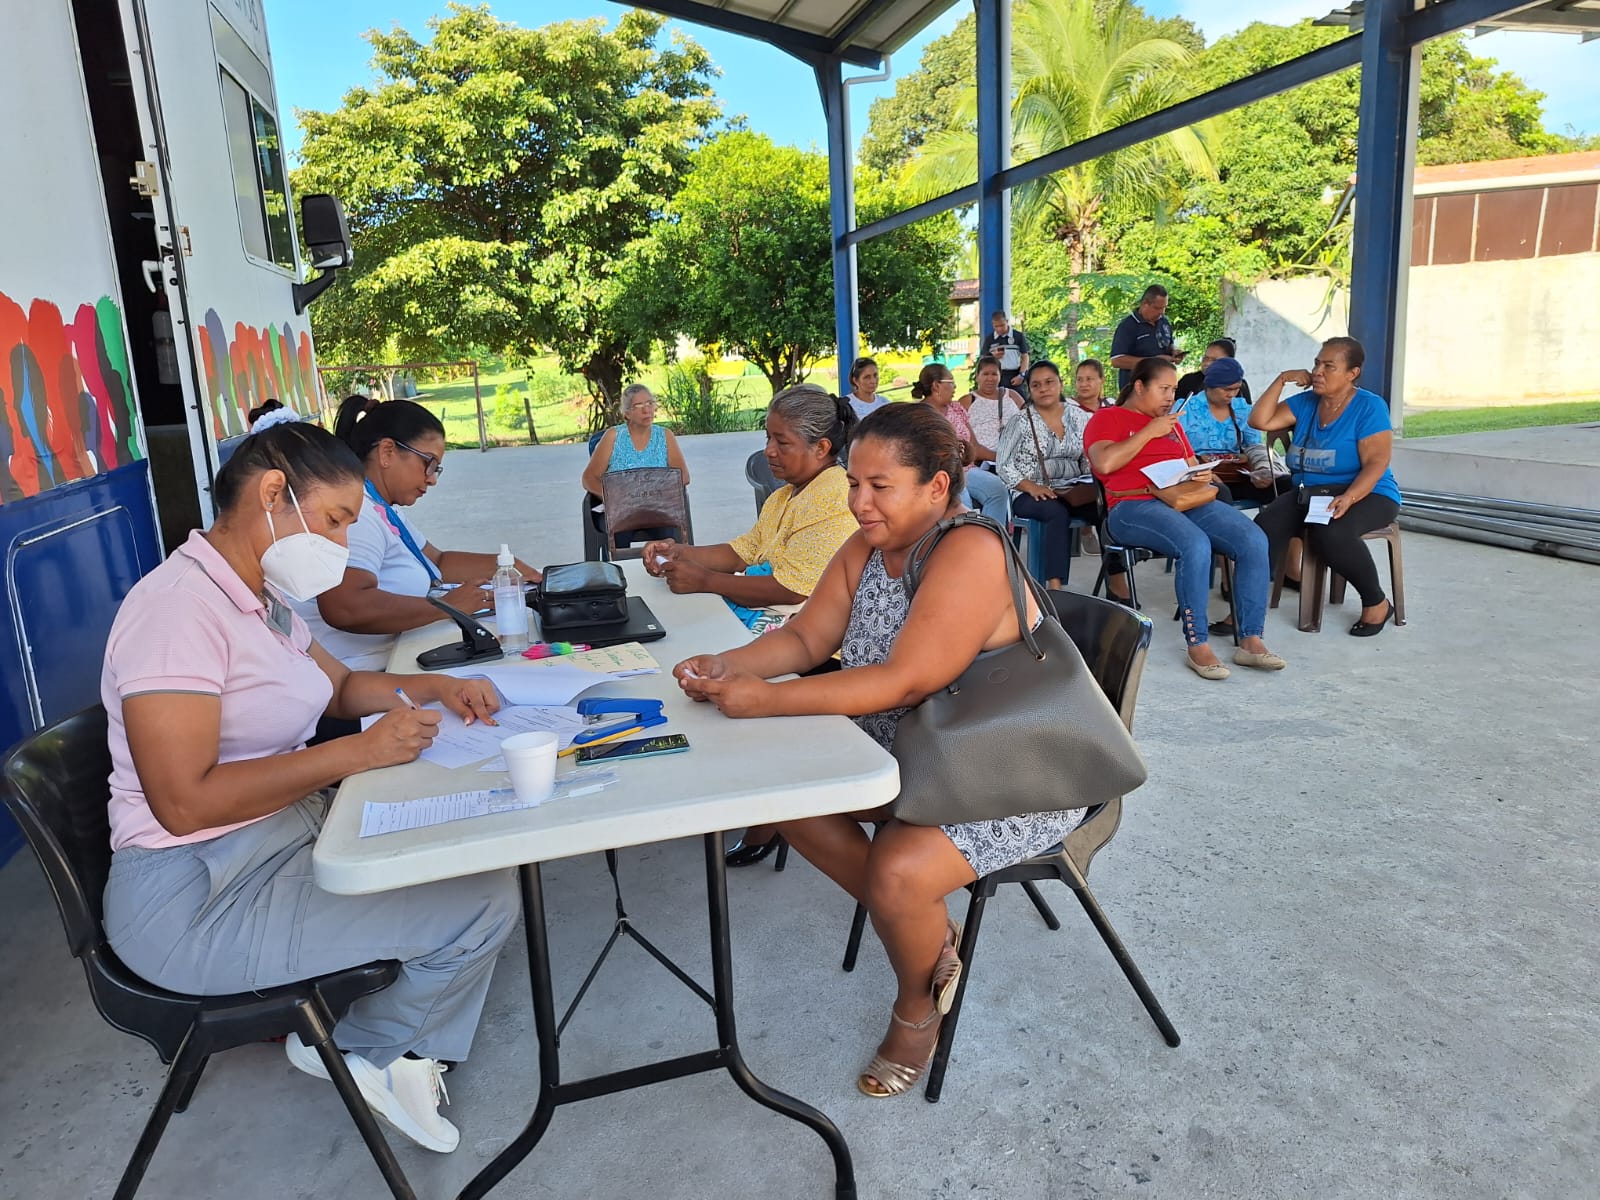 Clínica móvil Salud sobre Ruedas recorrió el distrito de Chame en Panamá Oeste